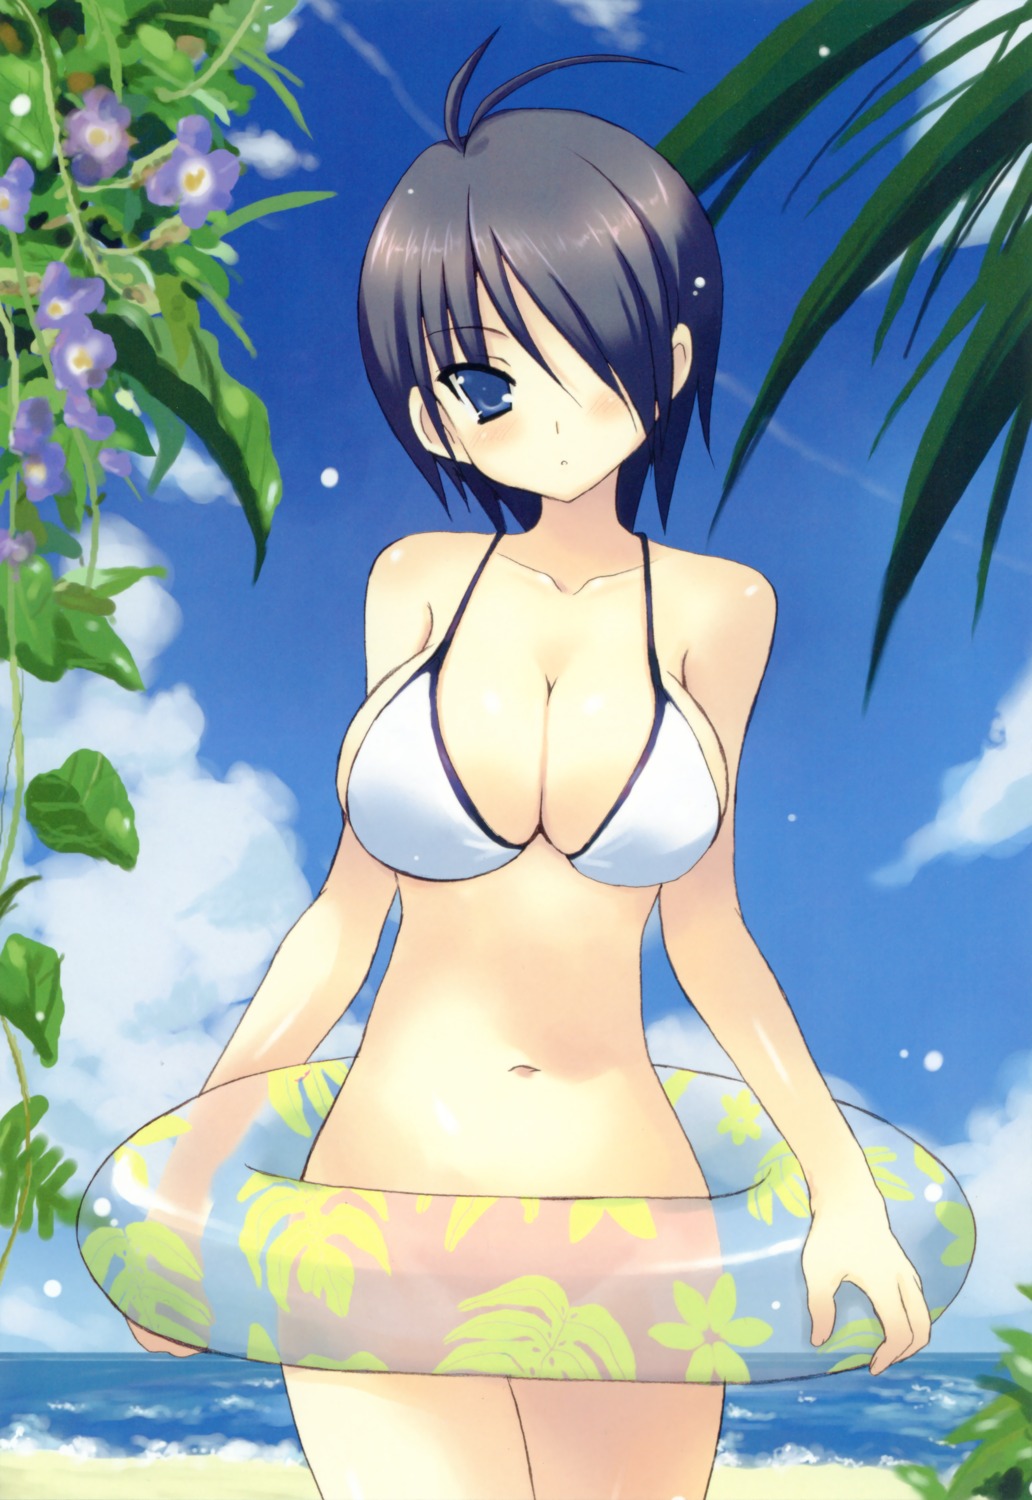 bikini bottomless cleavage kirishima_sakura kyougoku_shin sakura_sakura swimsuits